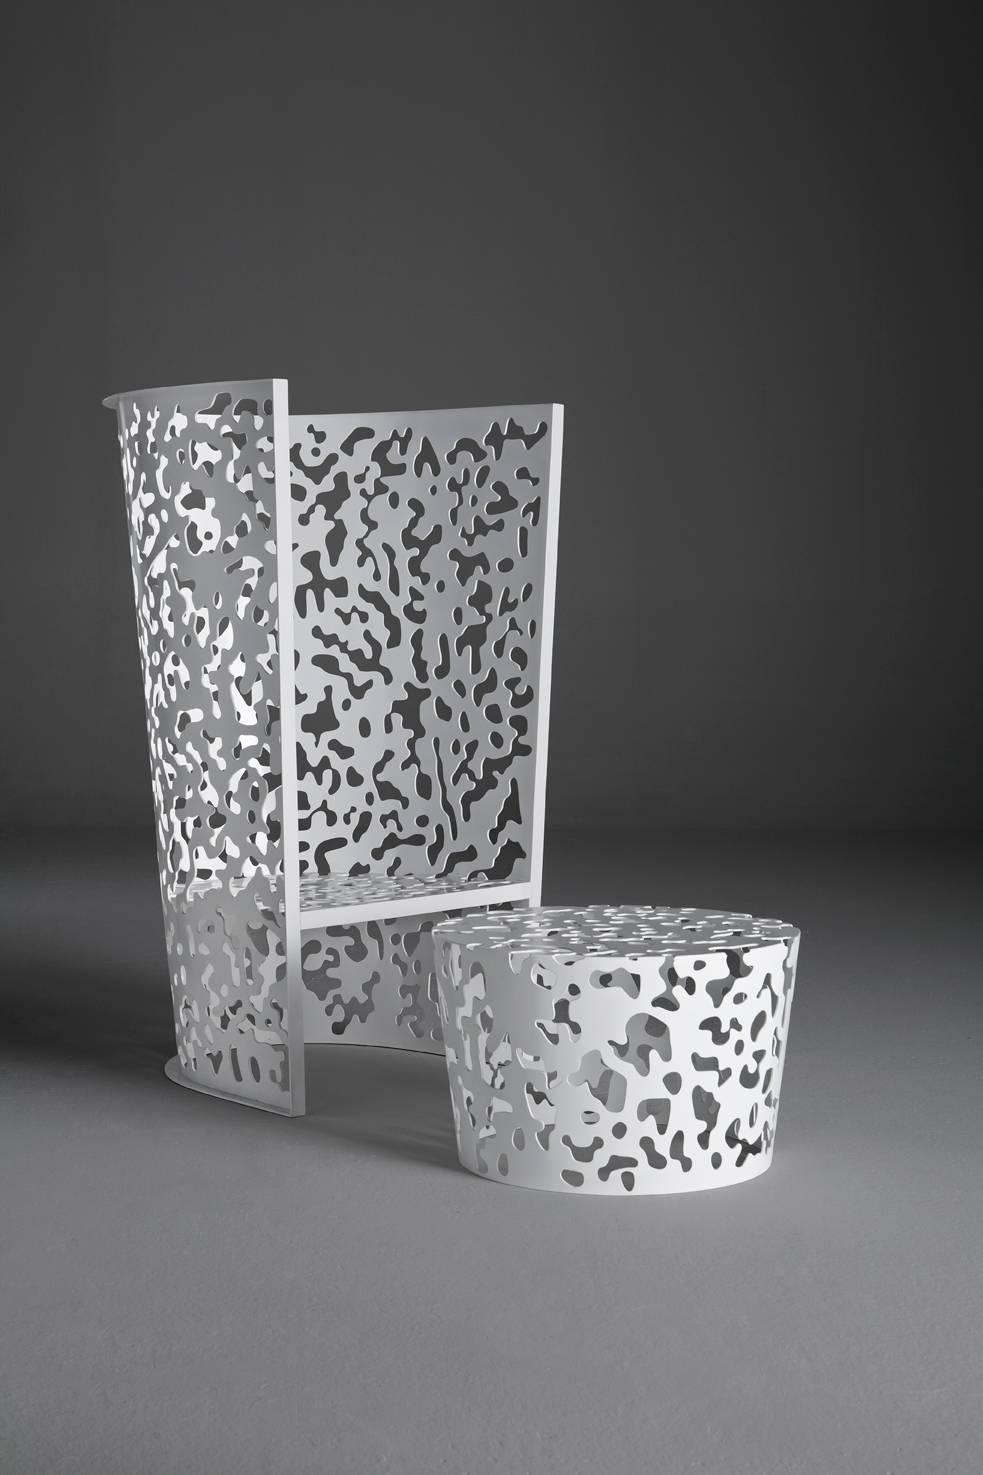 Camouflage ist eine Outdoor-Kollektion, die einen hohen und einen niedrigen Sessel, einen Tisch und einen kleinen Tisch umfasst, die alle aus Aluminium gefertigt sind. Bei diesen skulpturalen Elementen umrahmt die geometrische Gestaltung der